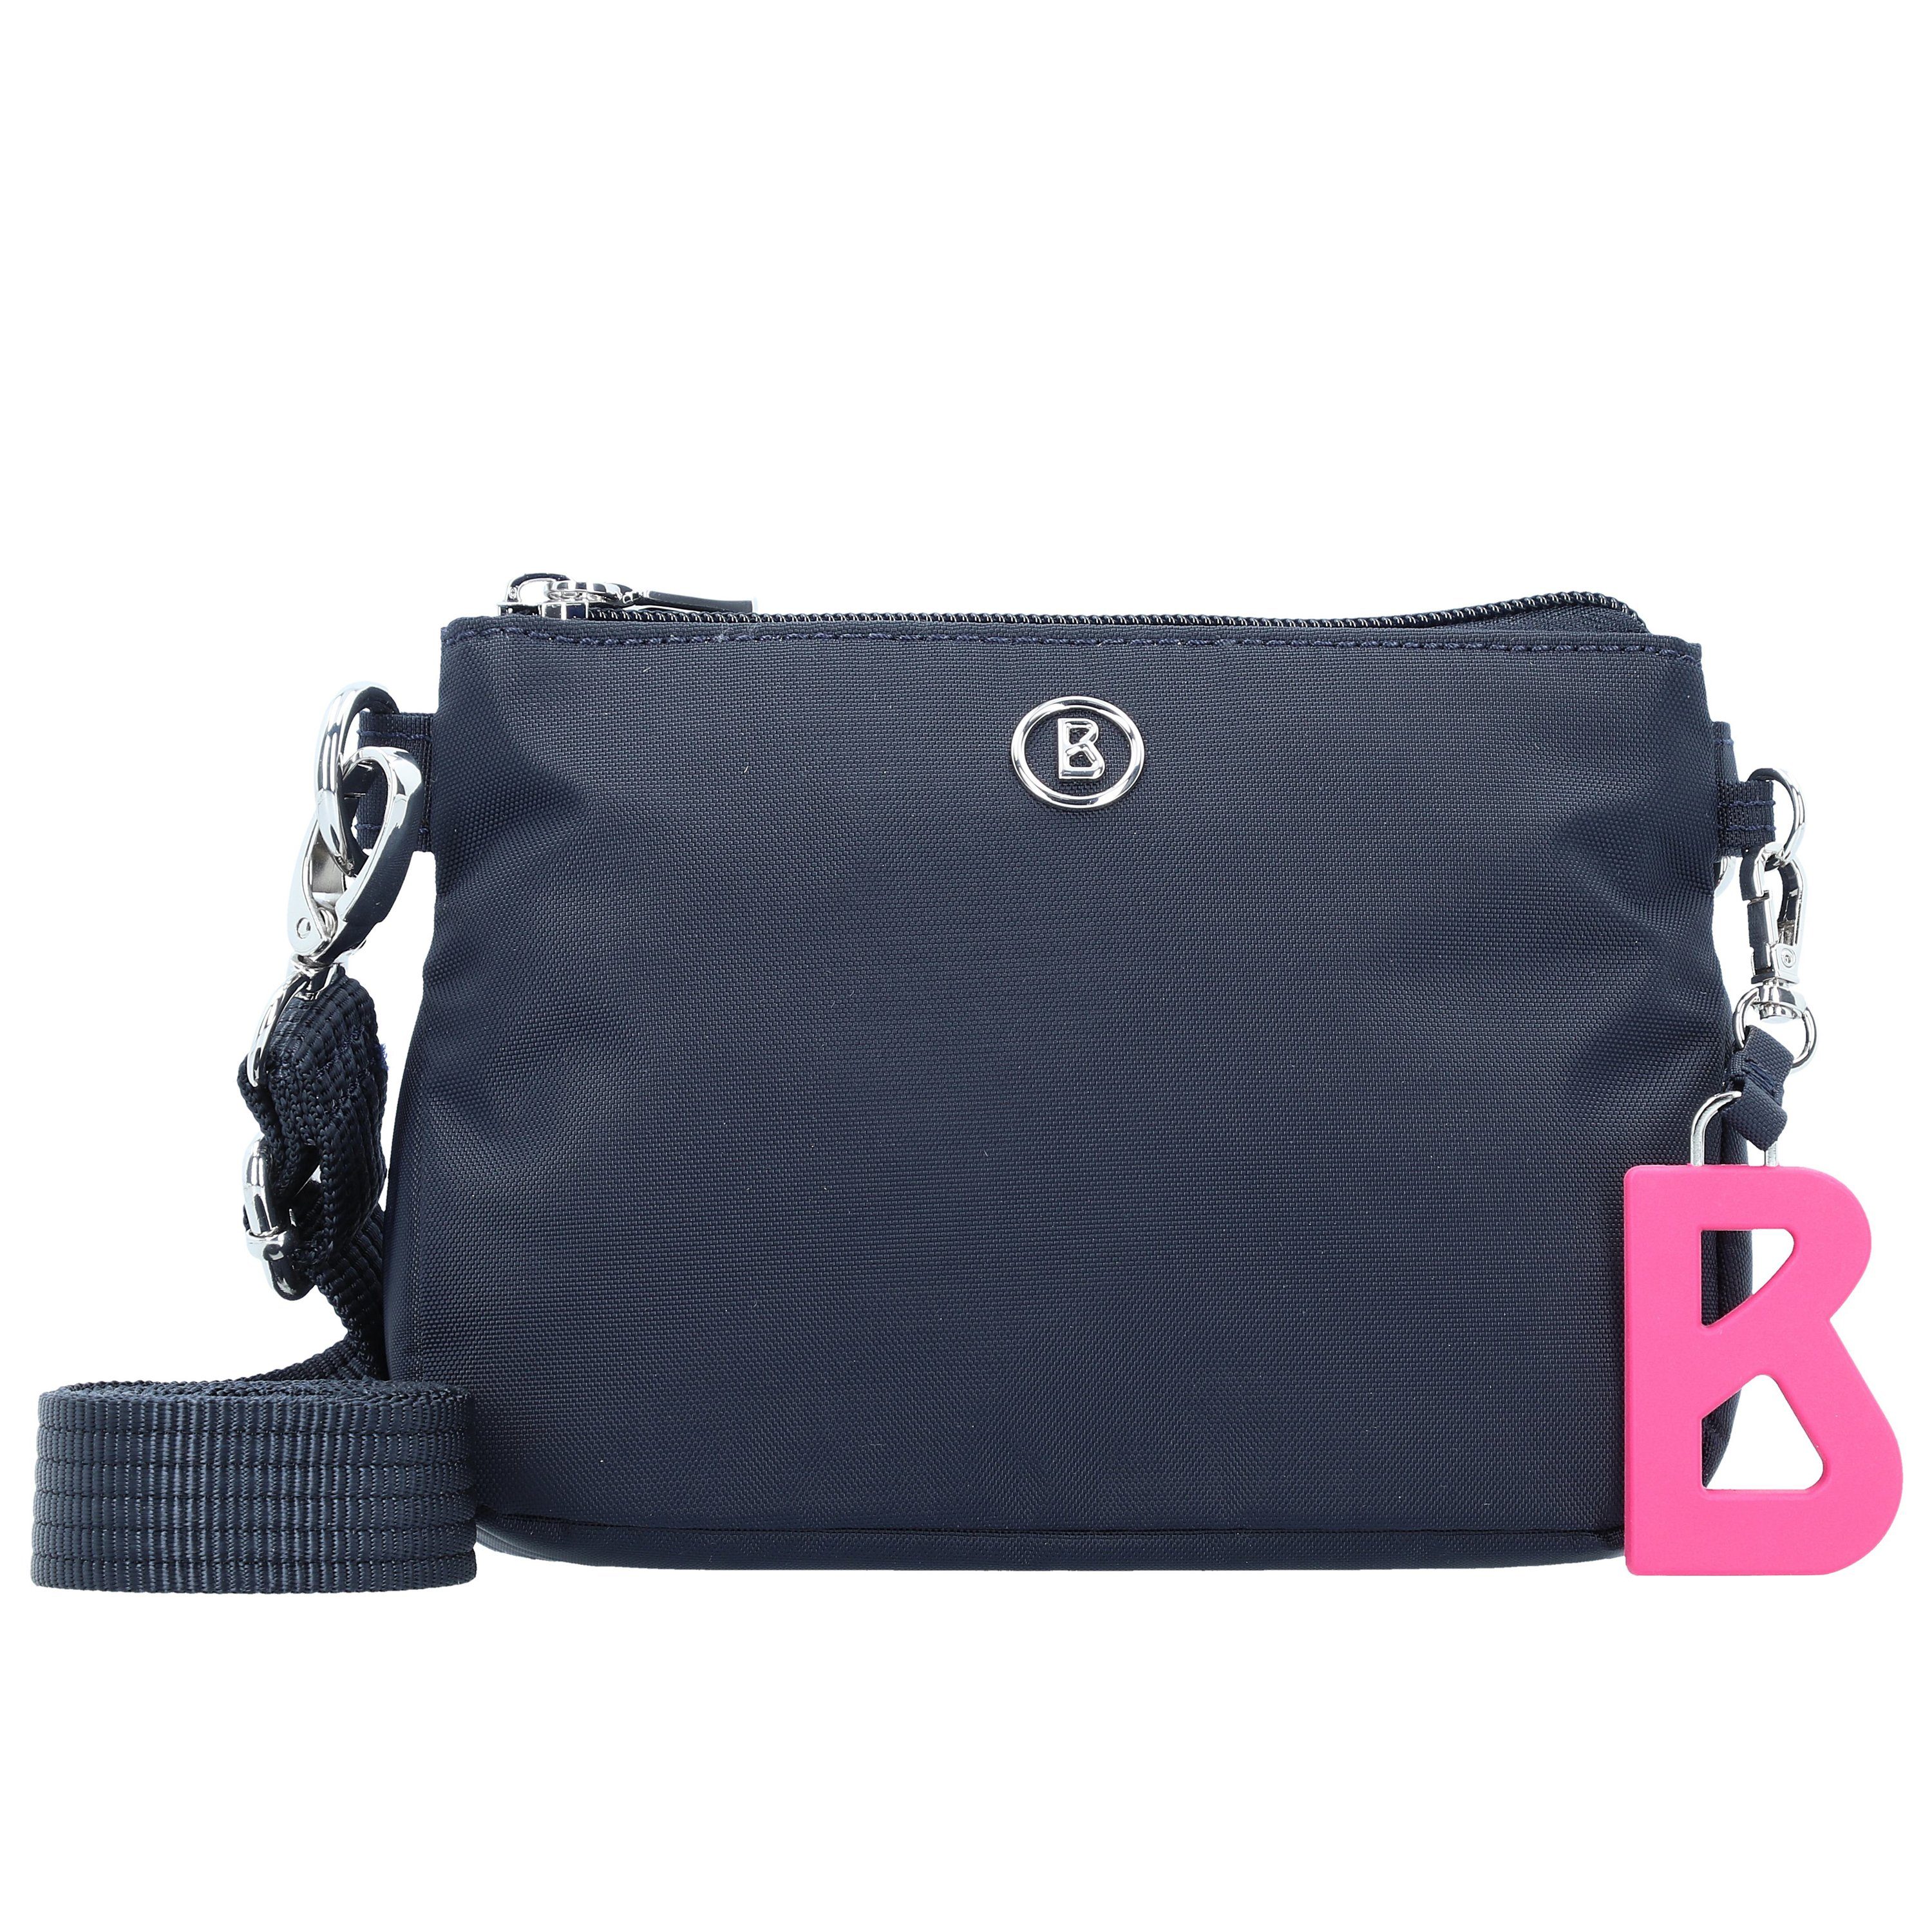 Bogner Handtasche Verbier Kata dark blue, Farbe: blau online kaufen | OTTO